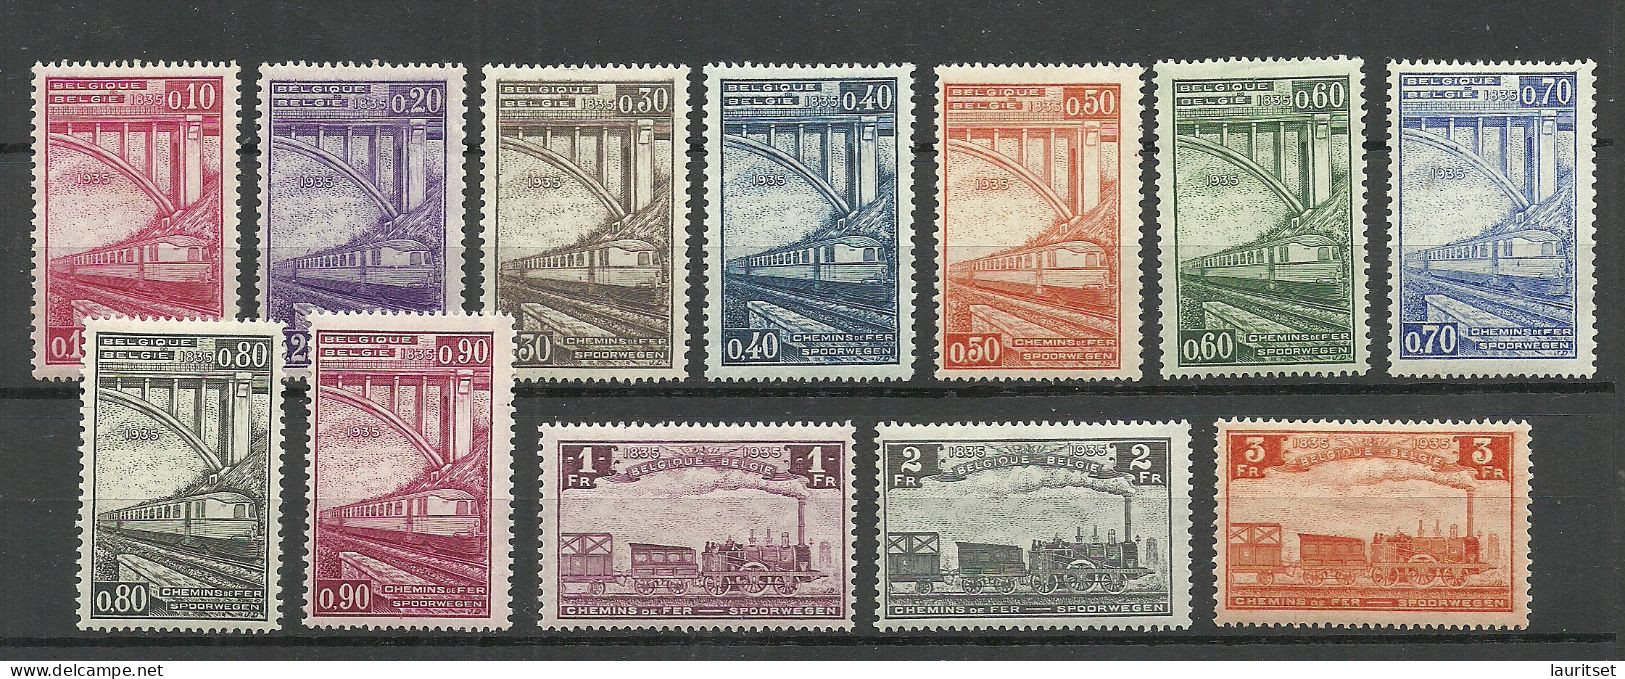 BELGIEN Belgium Belgique 1935 Michel 171 - 182 Eisenbahnpaketmarken Railway Packet Stamps * - Neufs